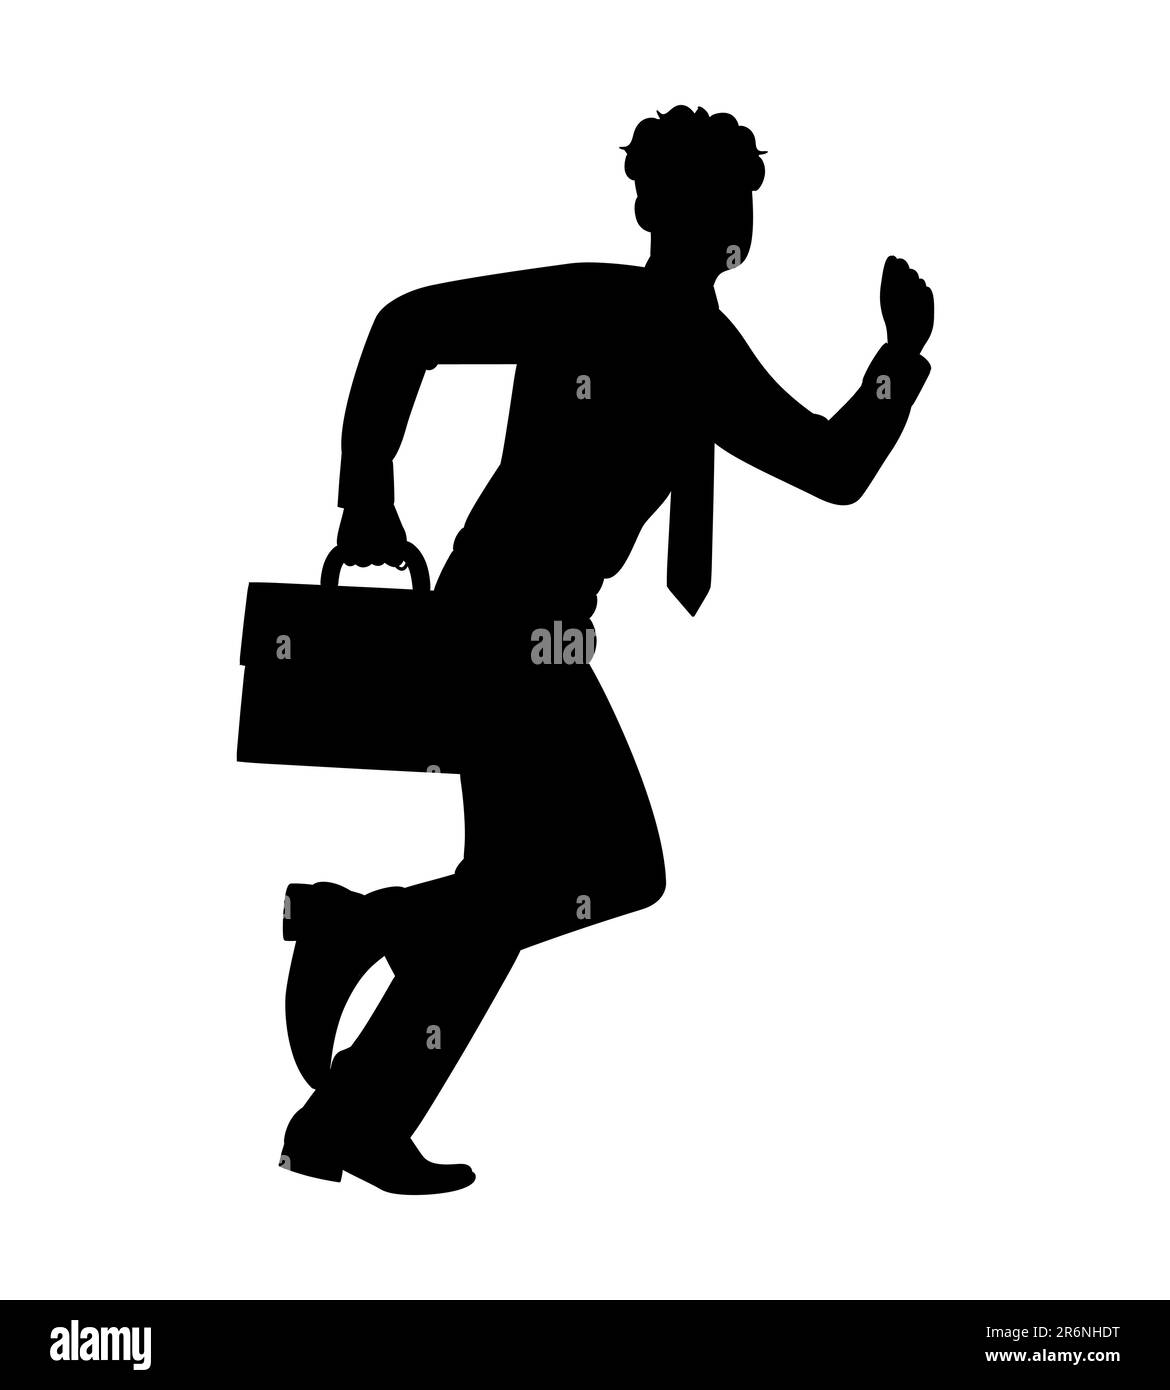 Schwarze Silhouette eines männlichen Mitarbeiters, der schnell zum Büro rennt, während er einen Aktenkoffer bei sich trägt, ein Geschäftsmann, der es eilig hat und sich verspätet, Vektorillu Stock Vektor